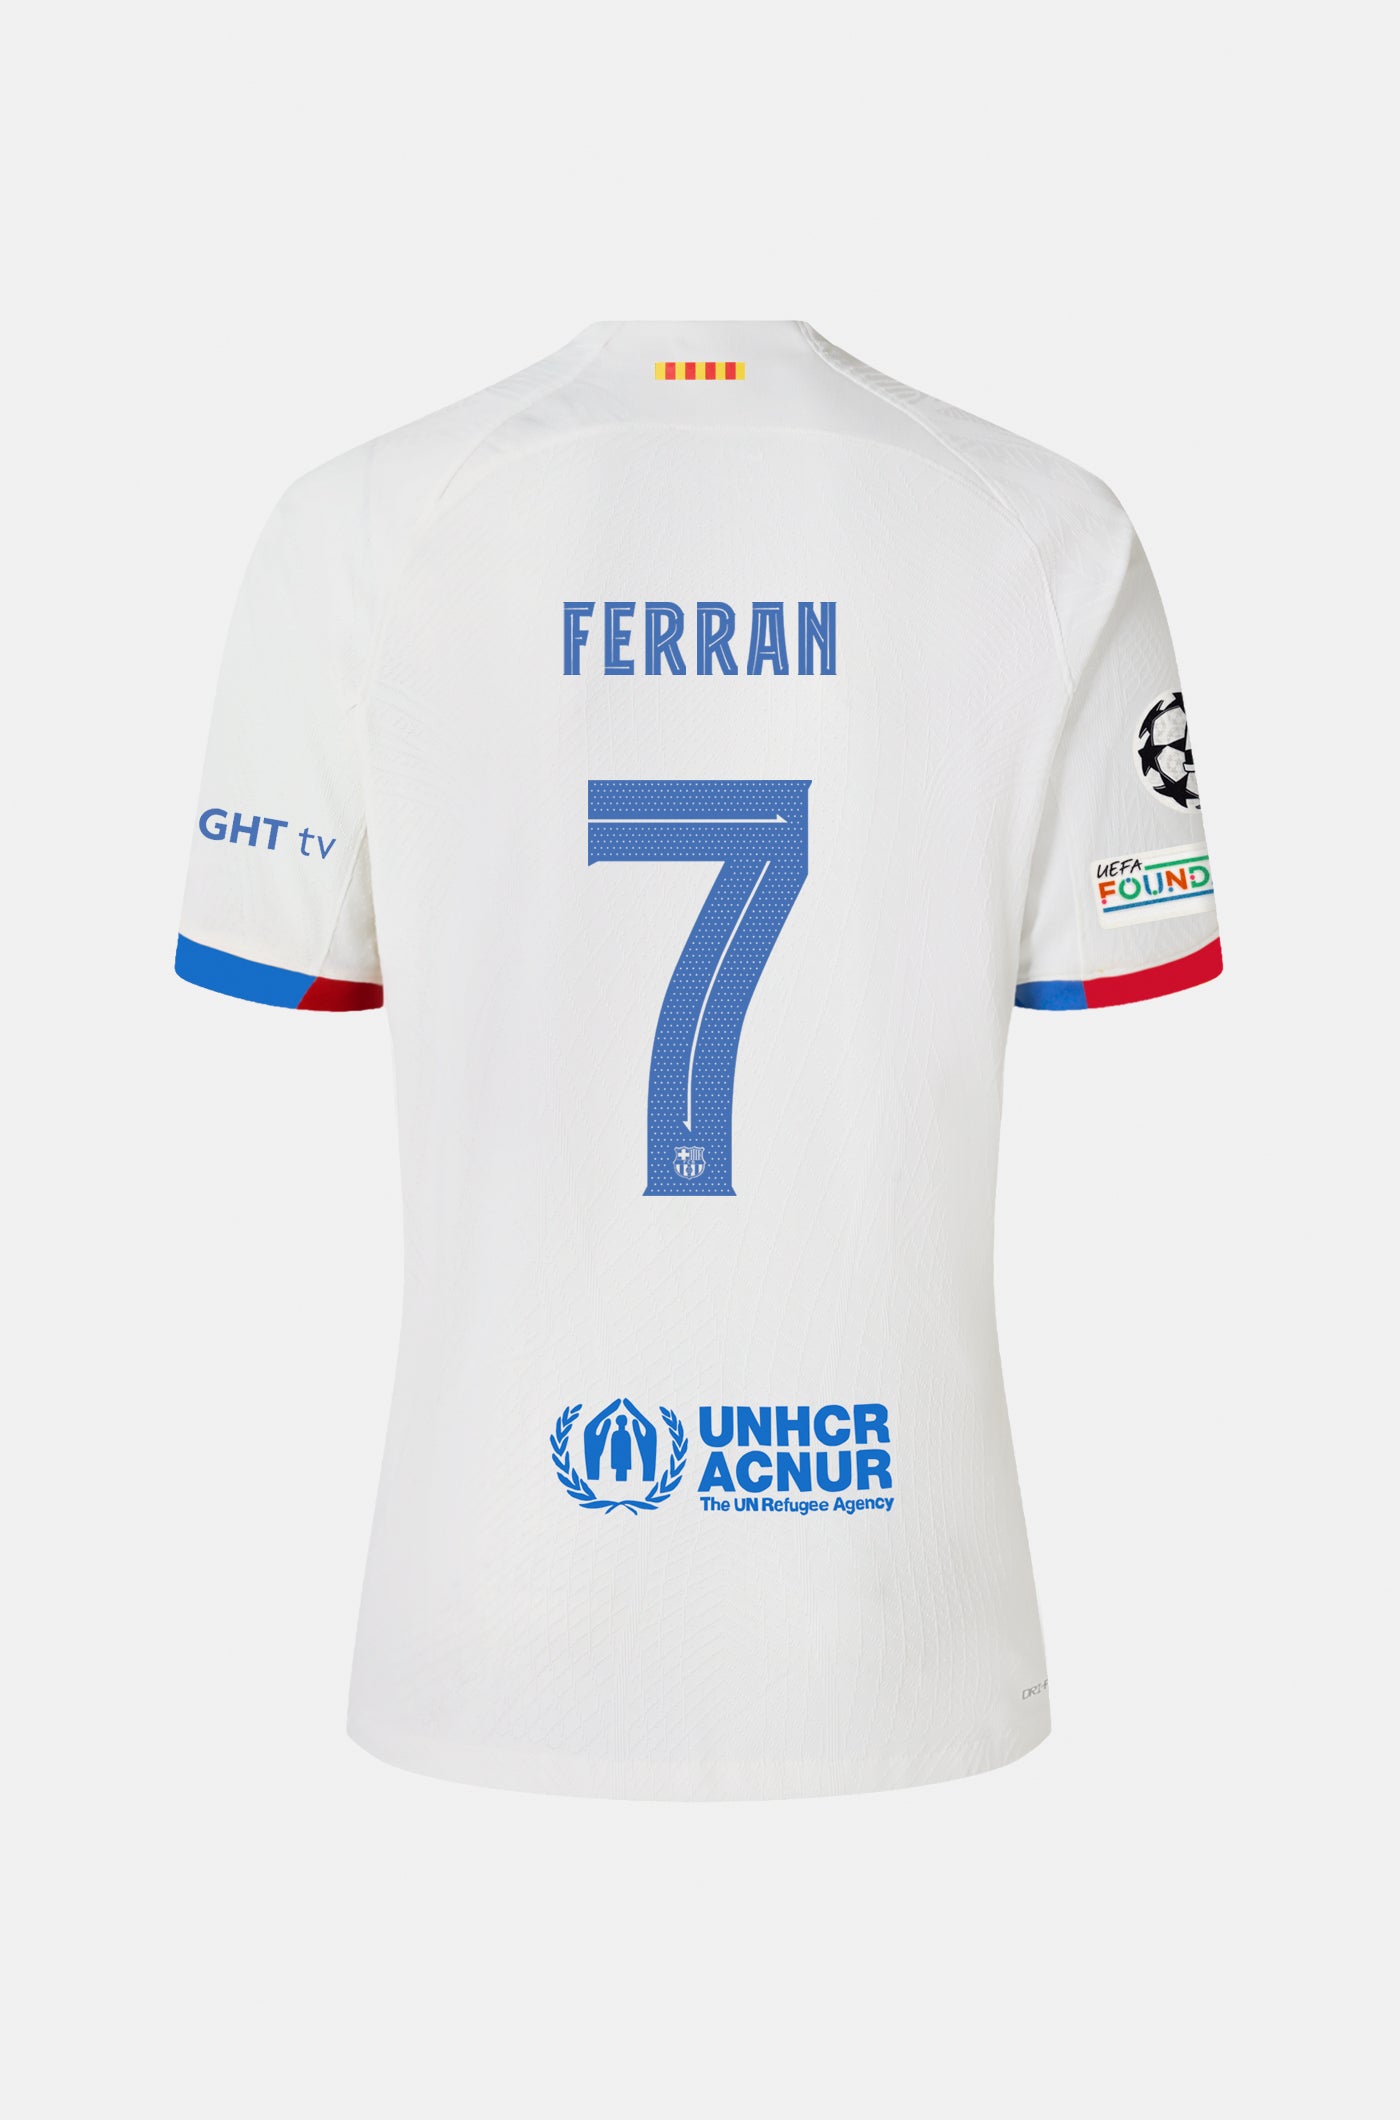 UCL FC Barcelona away shirt 23/24 Player’s Edition - FERRAN